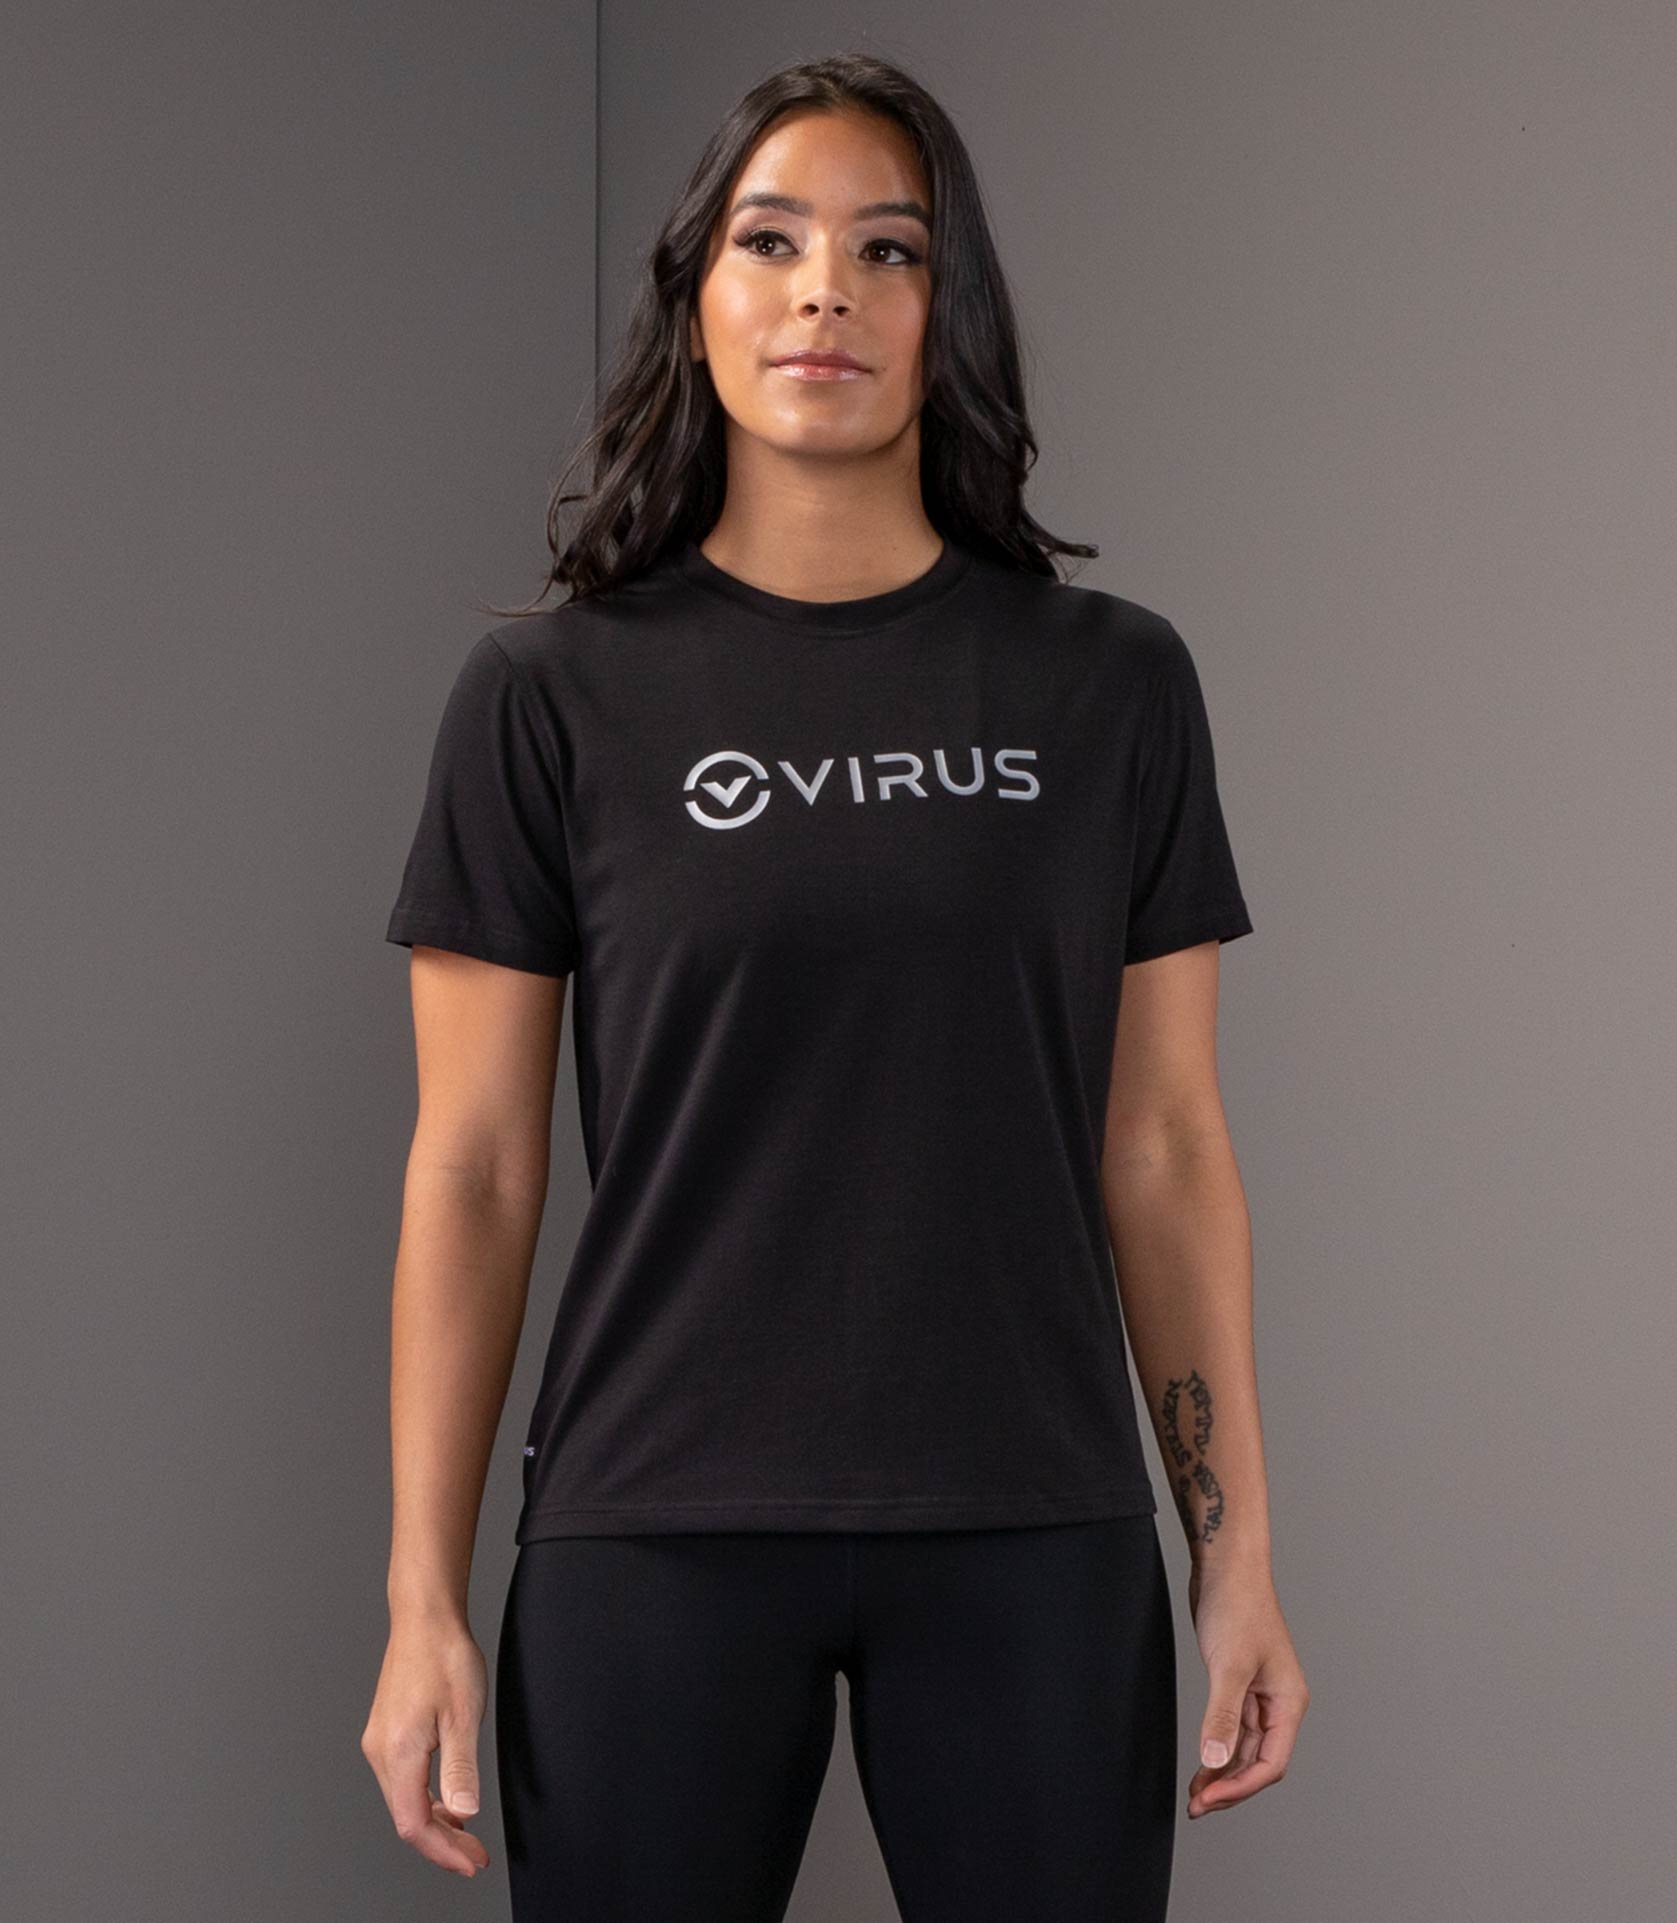 Women's T-Shirts & Tank Tops  Premium Women's Tops - VIRUS